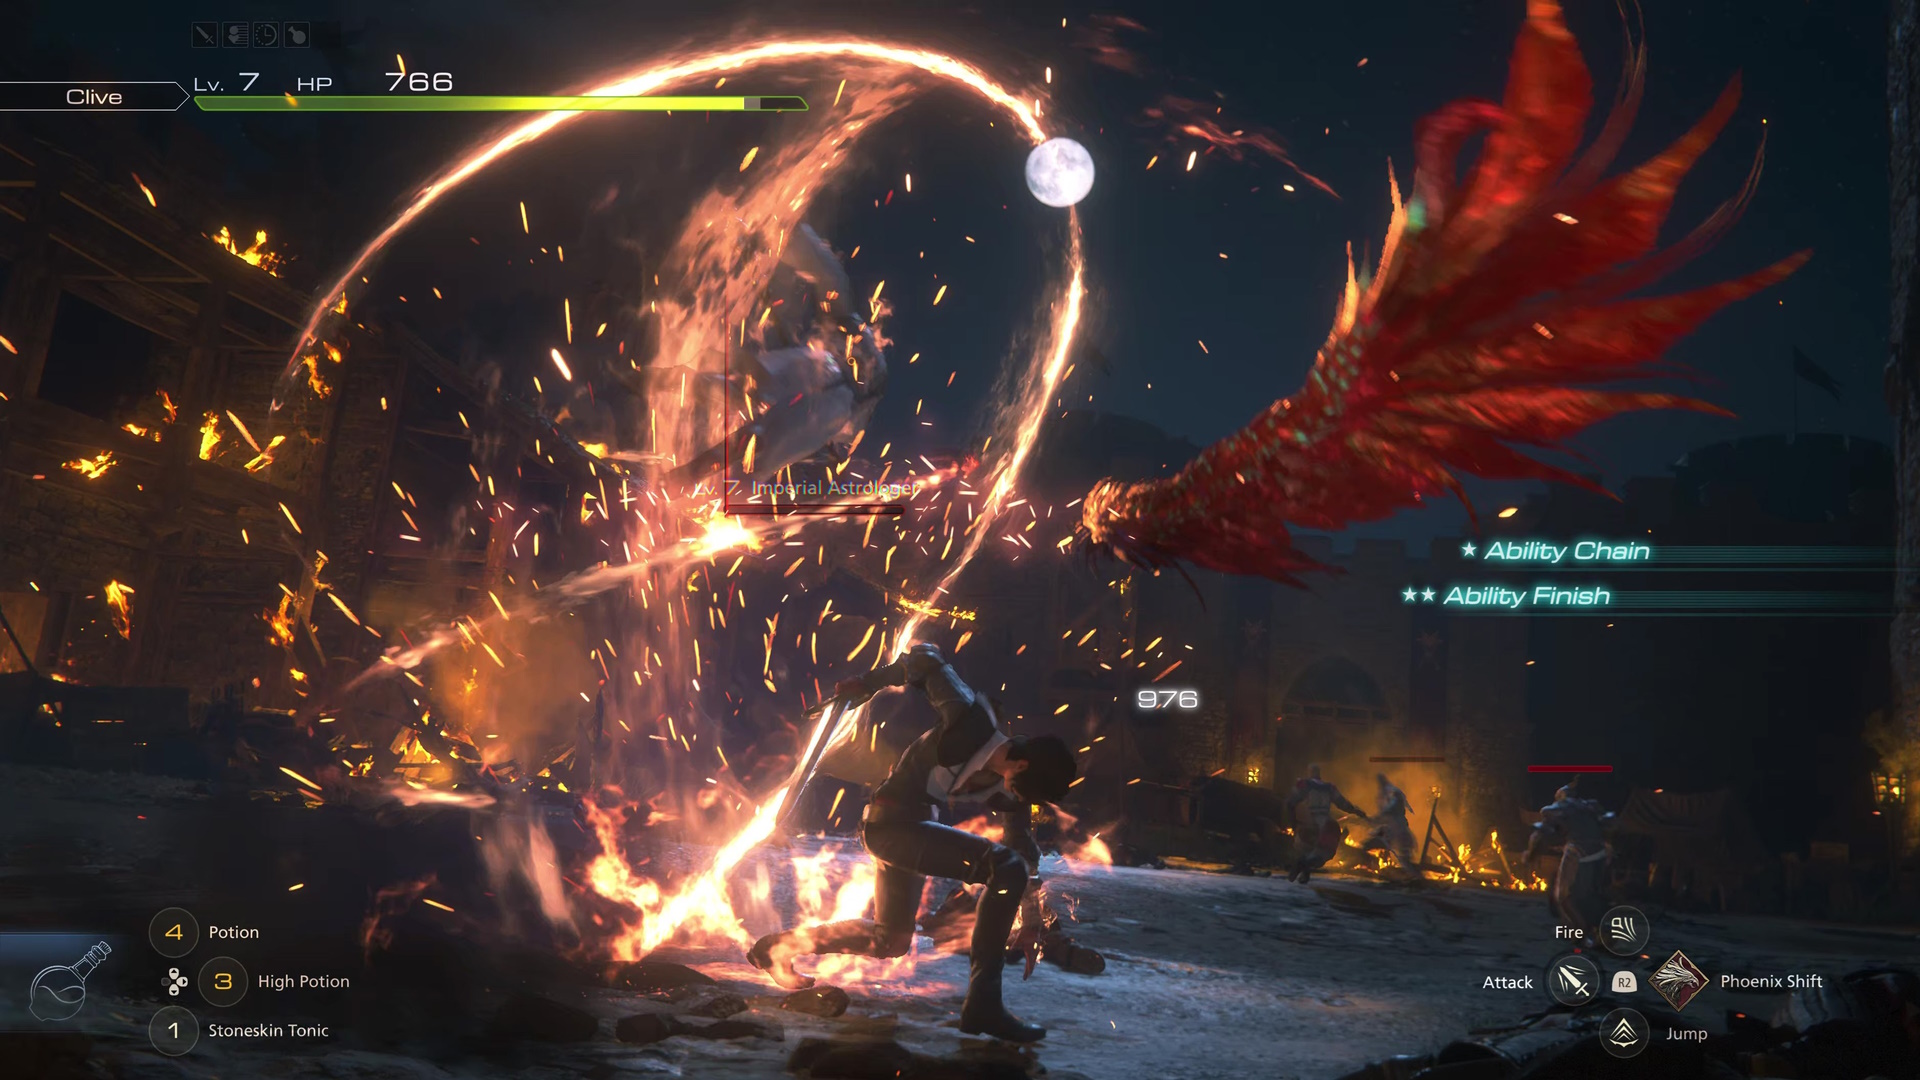 تعرض لقطة شاشة Final Fantasy 16 القتال مع Clive والعديد من عناصر واجهة المستخدم في ليلة مظلمة ضد الجنود